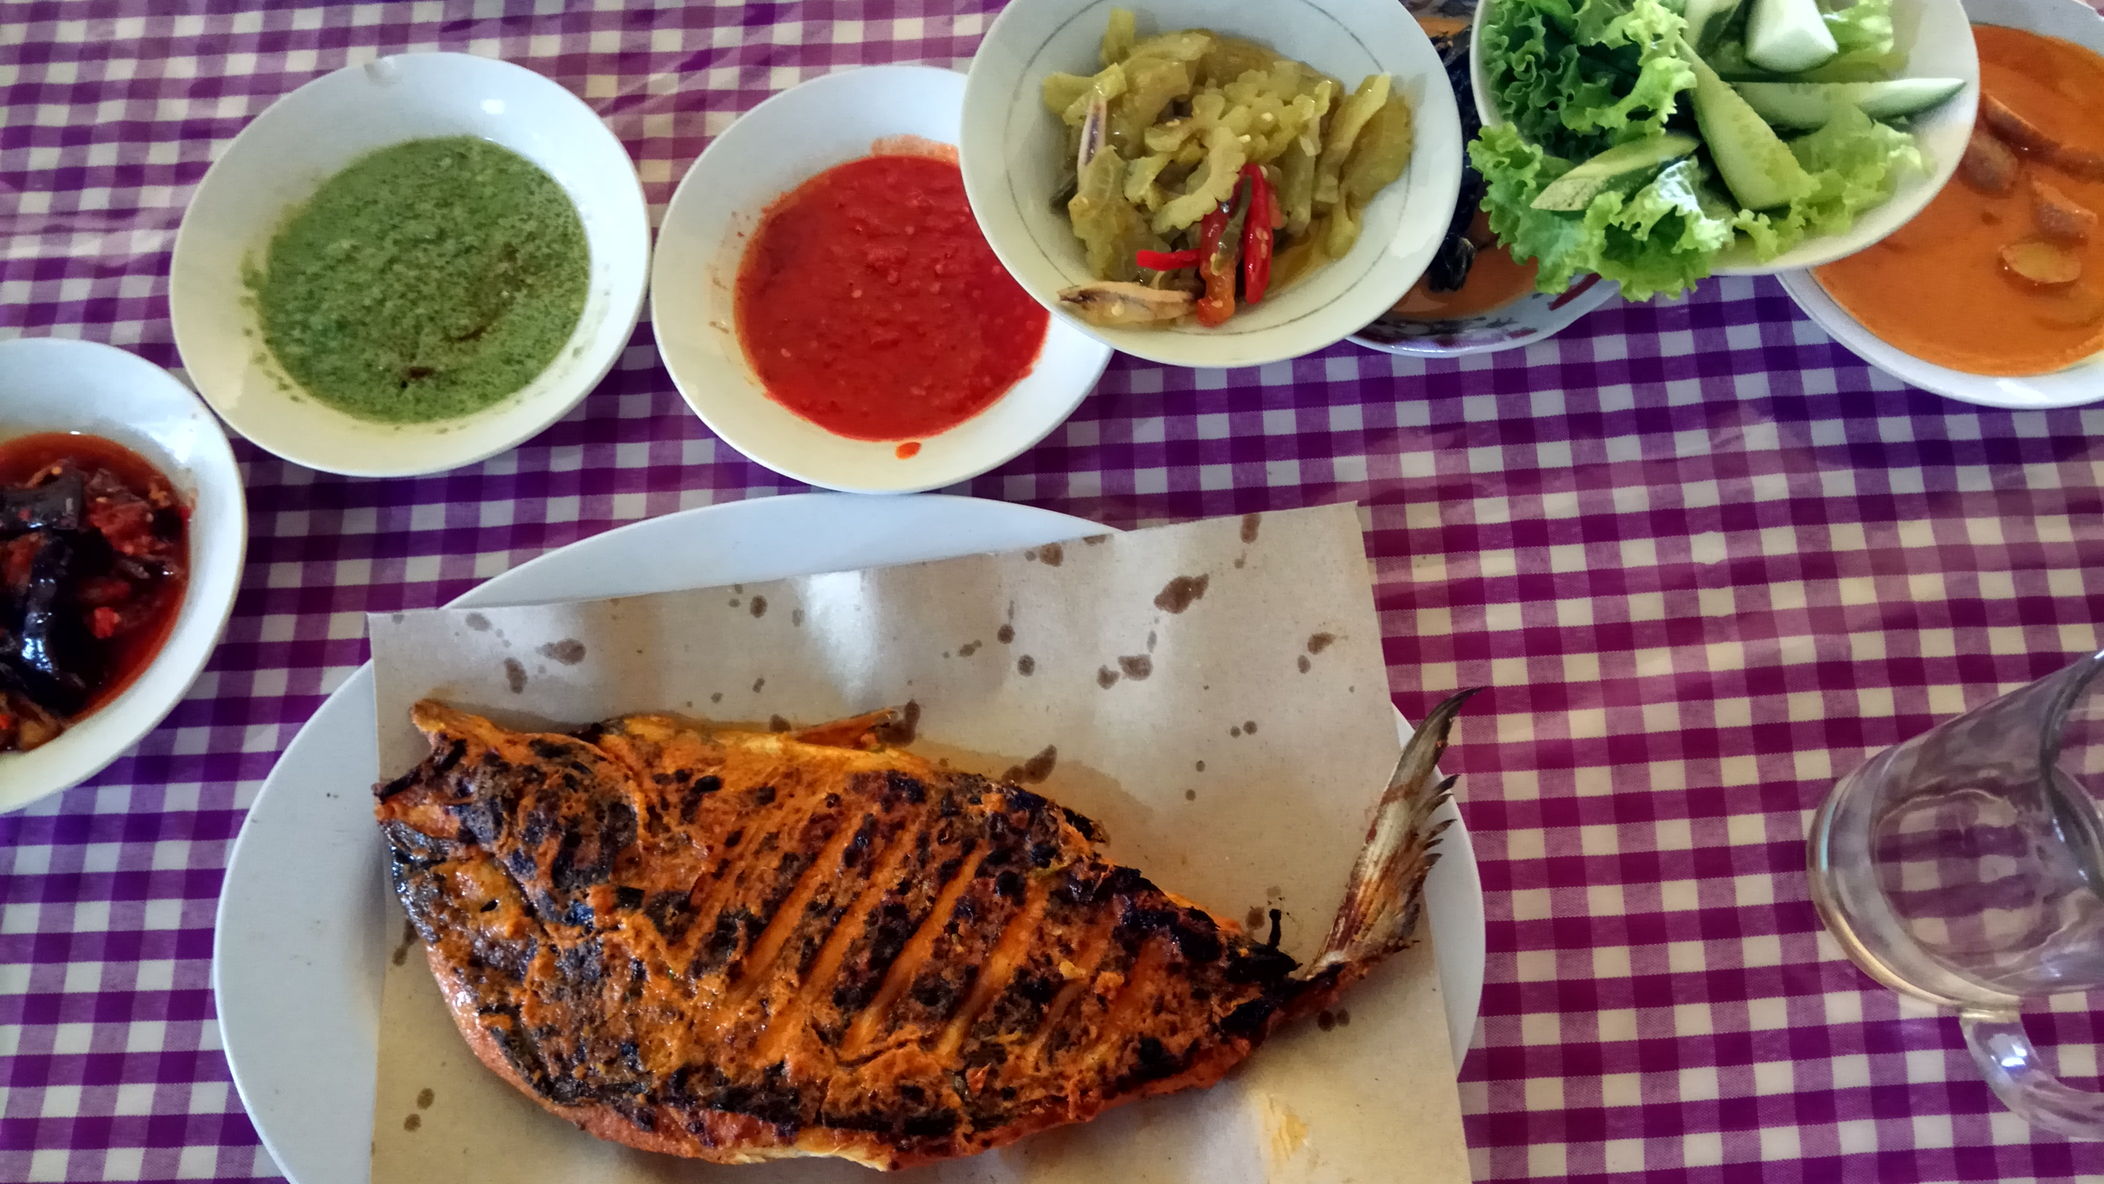 The signature fish dish from Padang